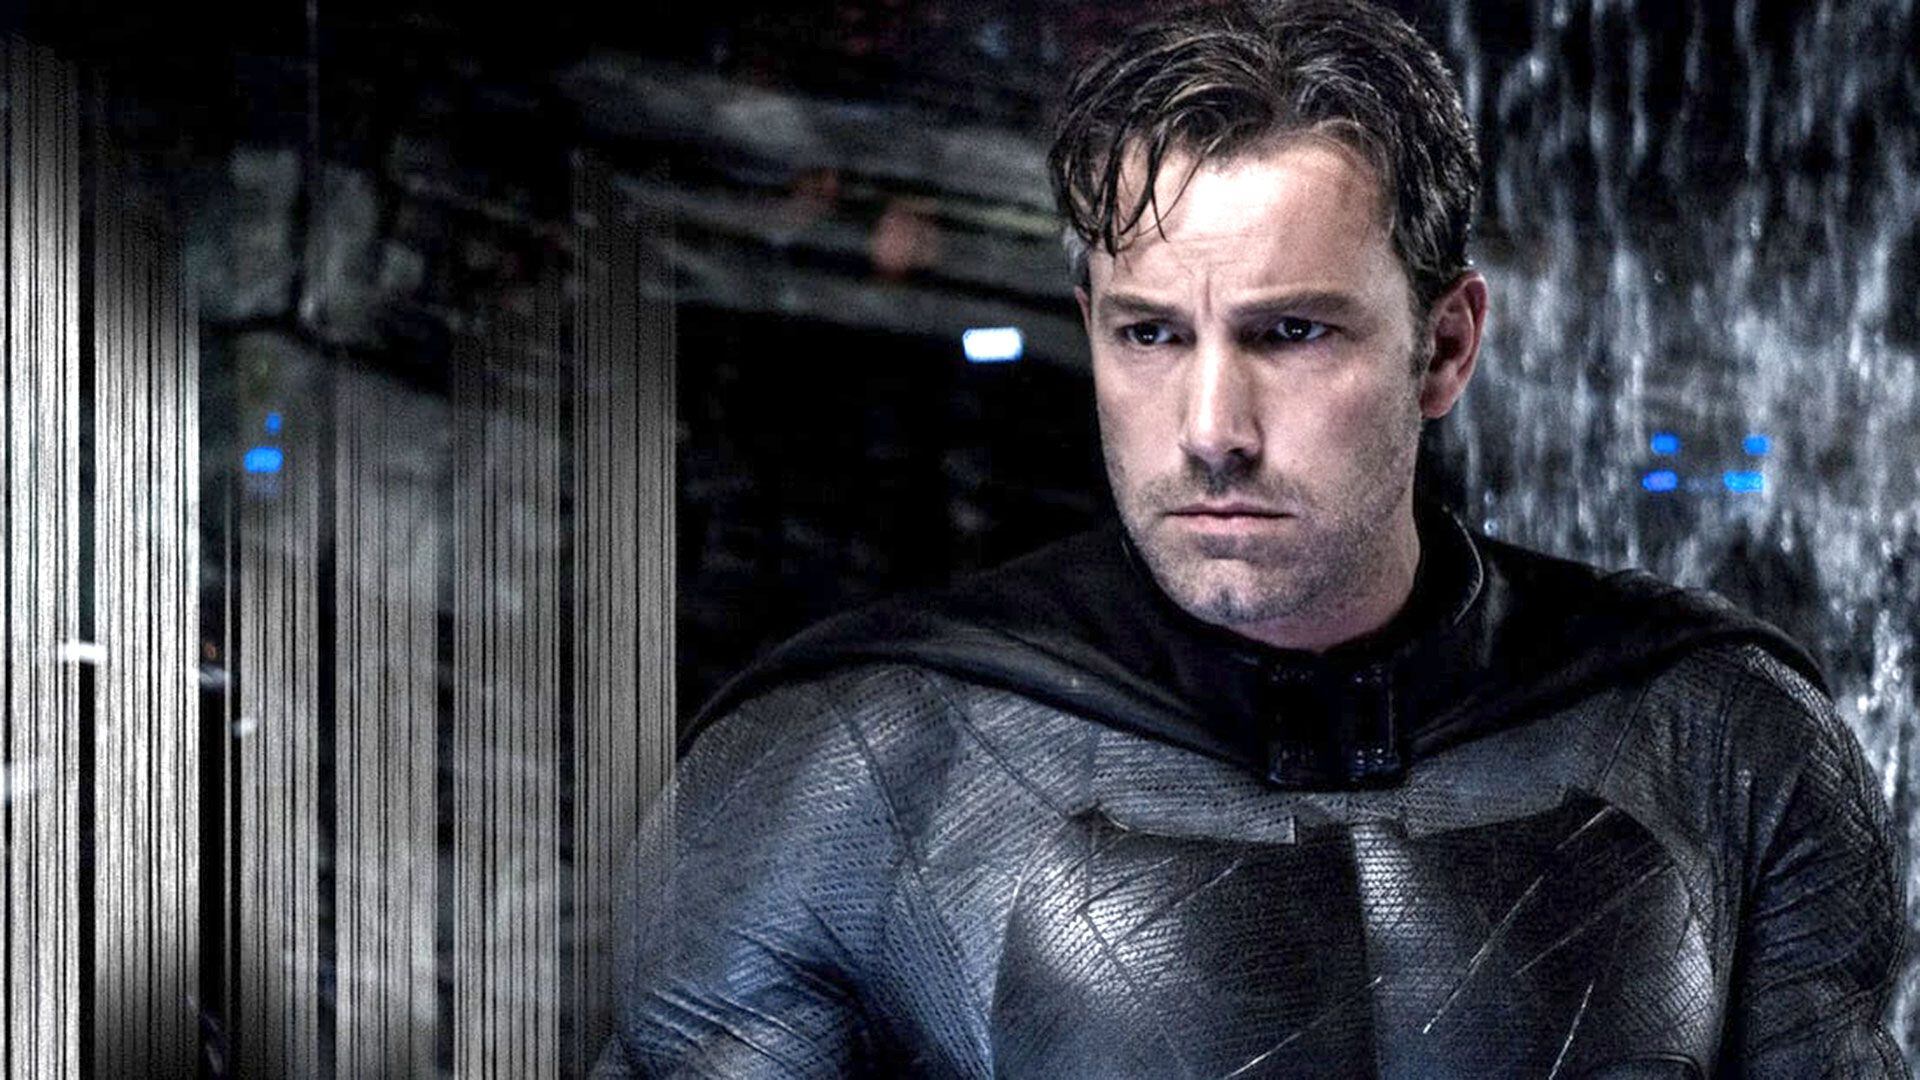 Ben Affleck encarnó a Batman en las películas dirigidas por Zack Snyder. (Warner Bros.)